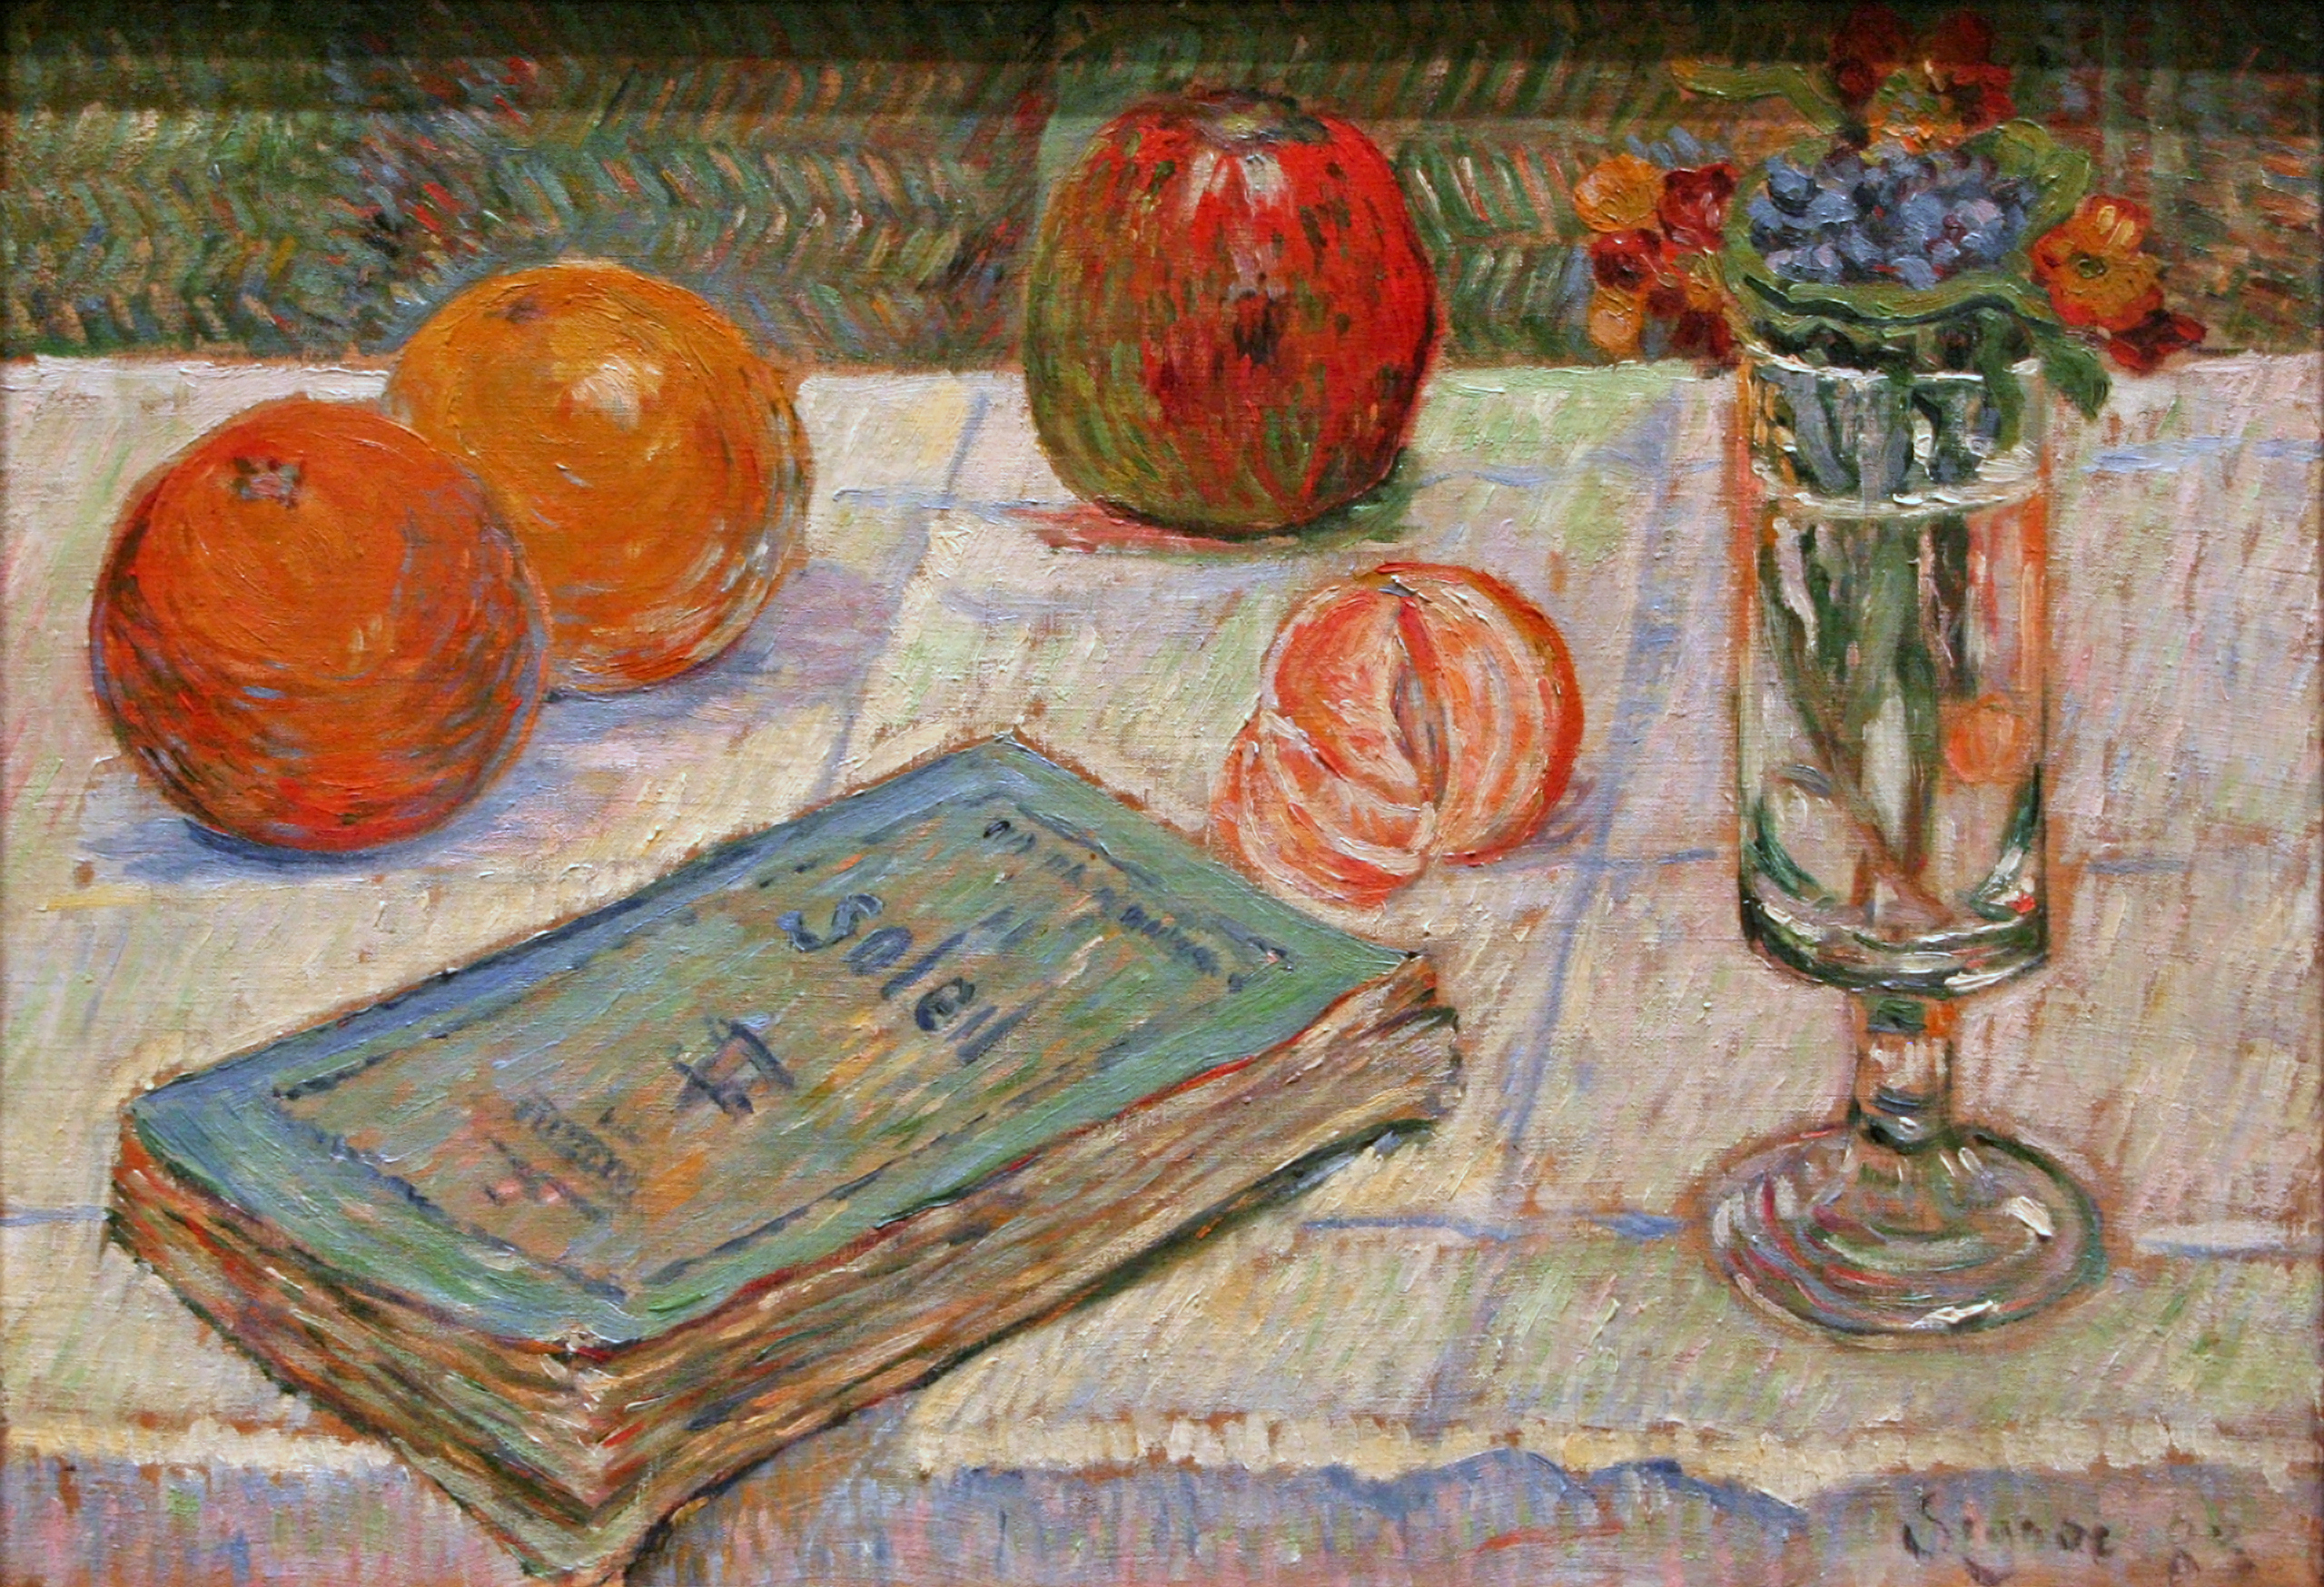 靜物: 書和橘子 by Paul Signac - 1883 年 - 32.5 x 46.5 釐米 